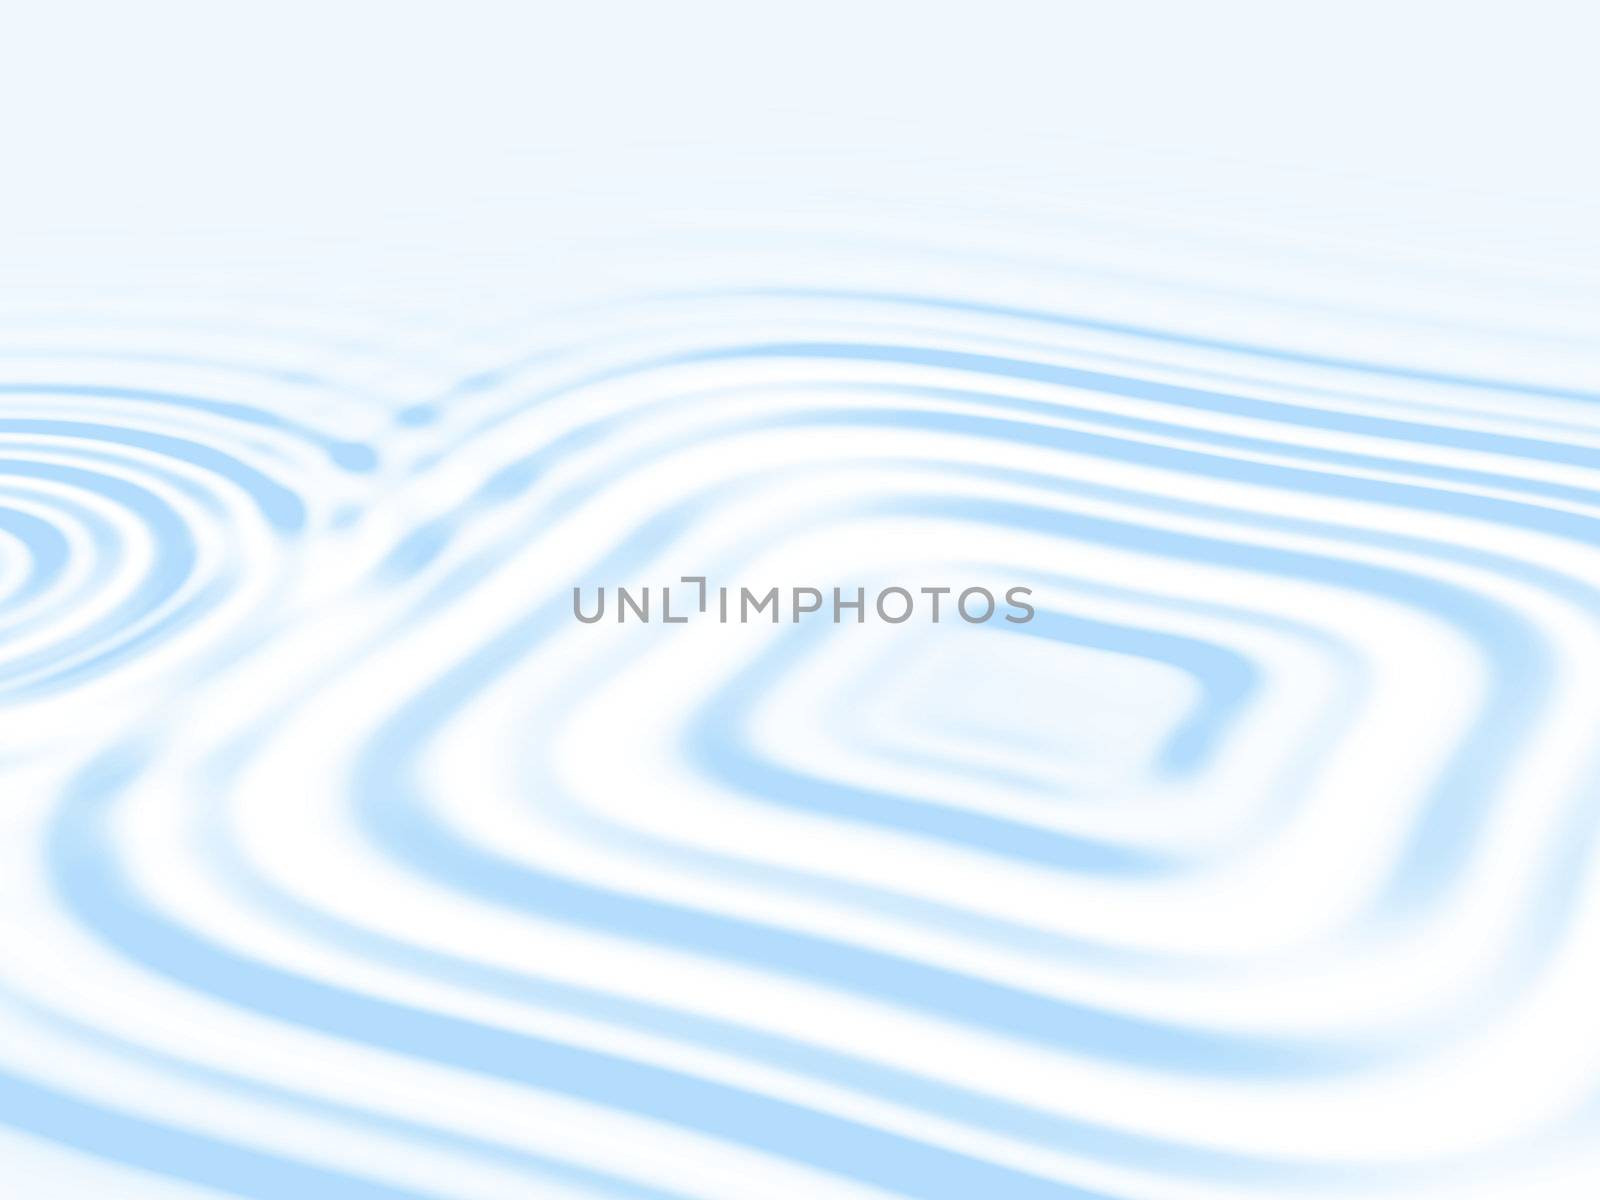 Unusual square ripple on liquid surface